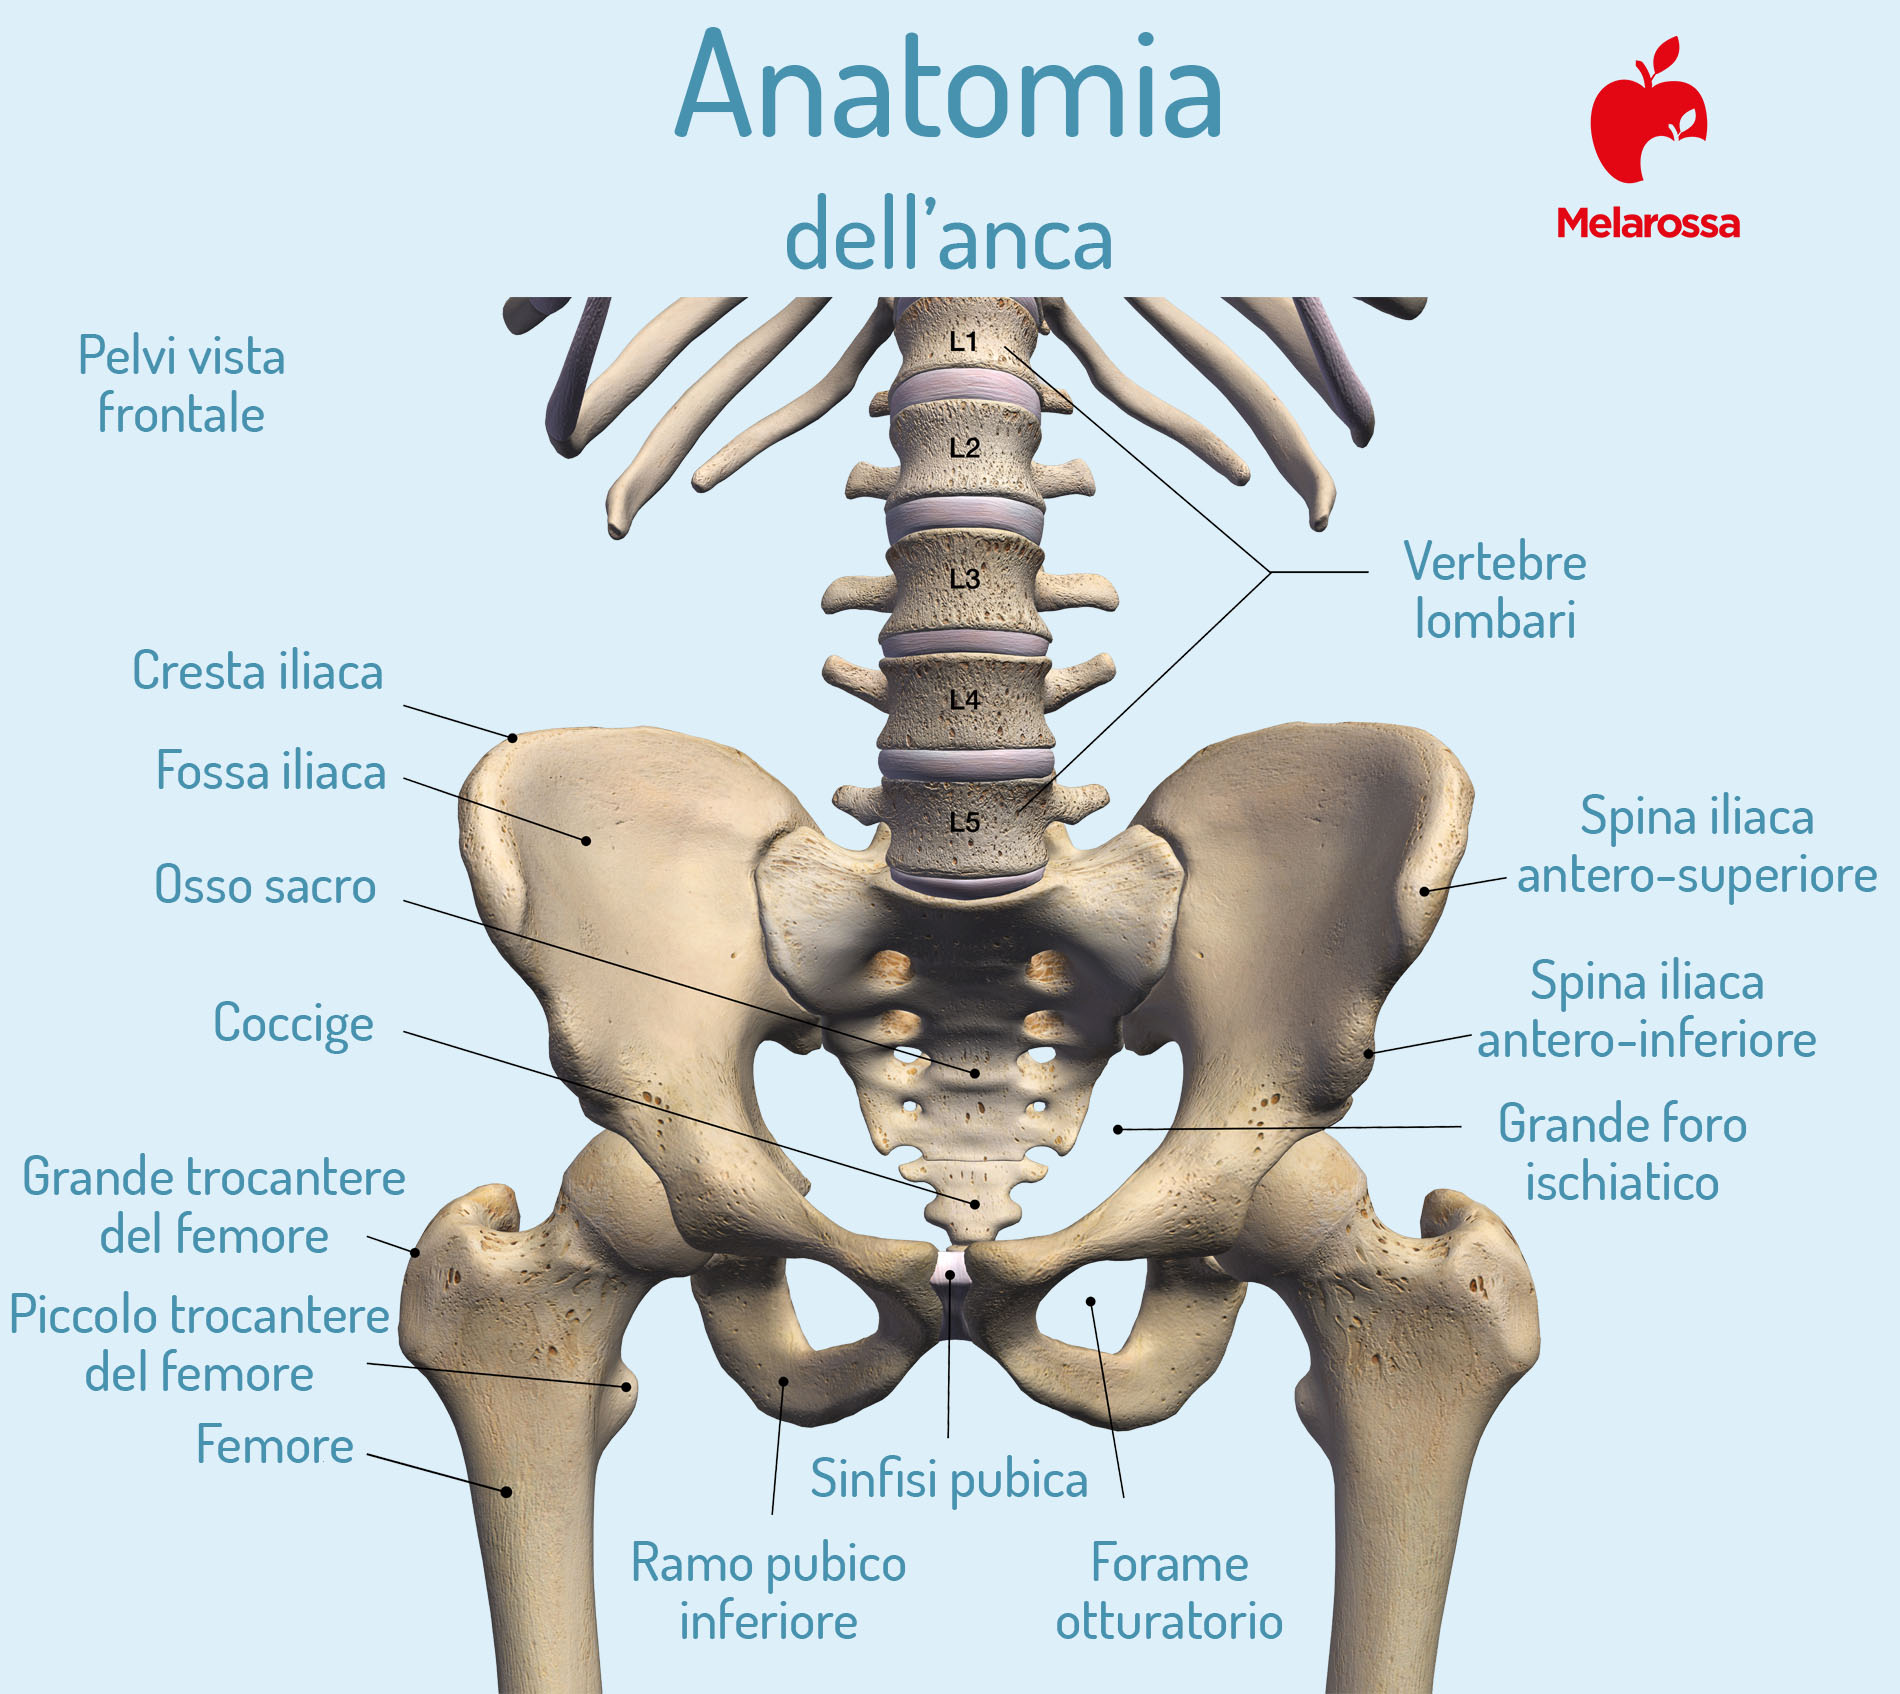 coxalgia: anatomia dell'anca